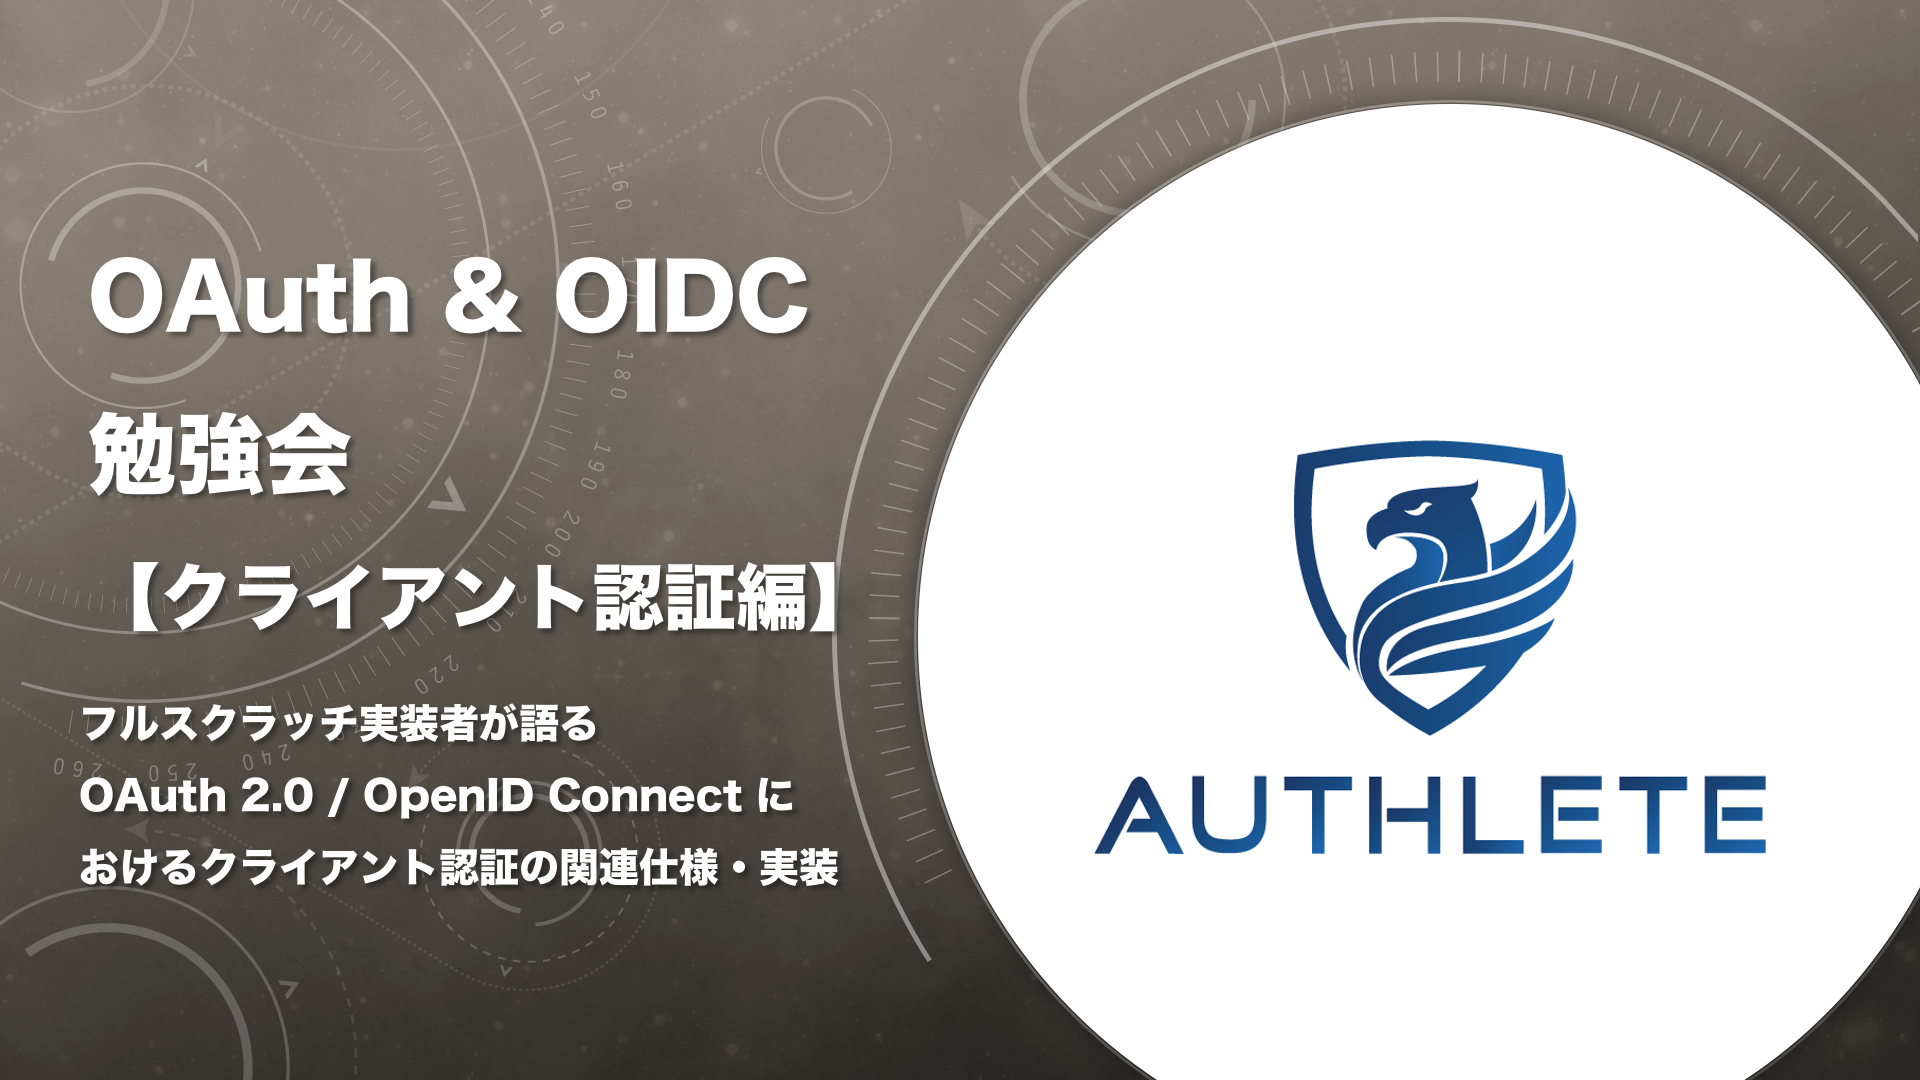 Client auth. Oauth логотип. OIDC лого.